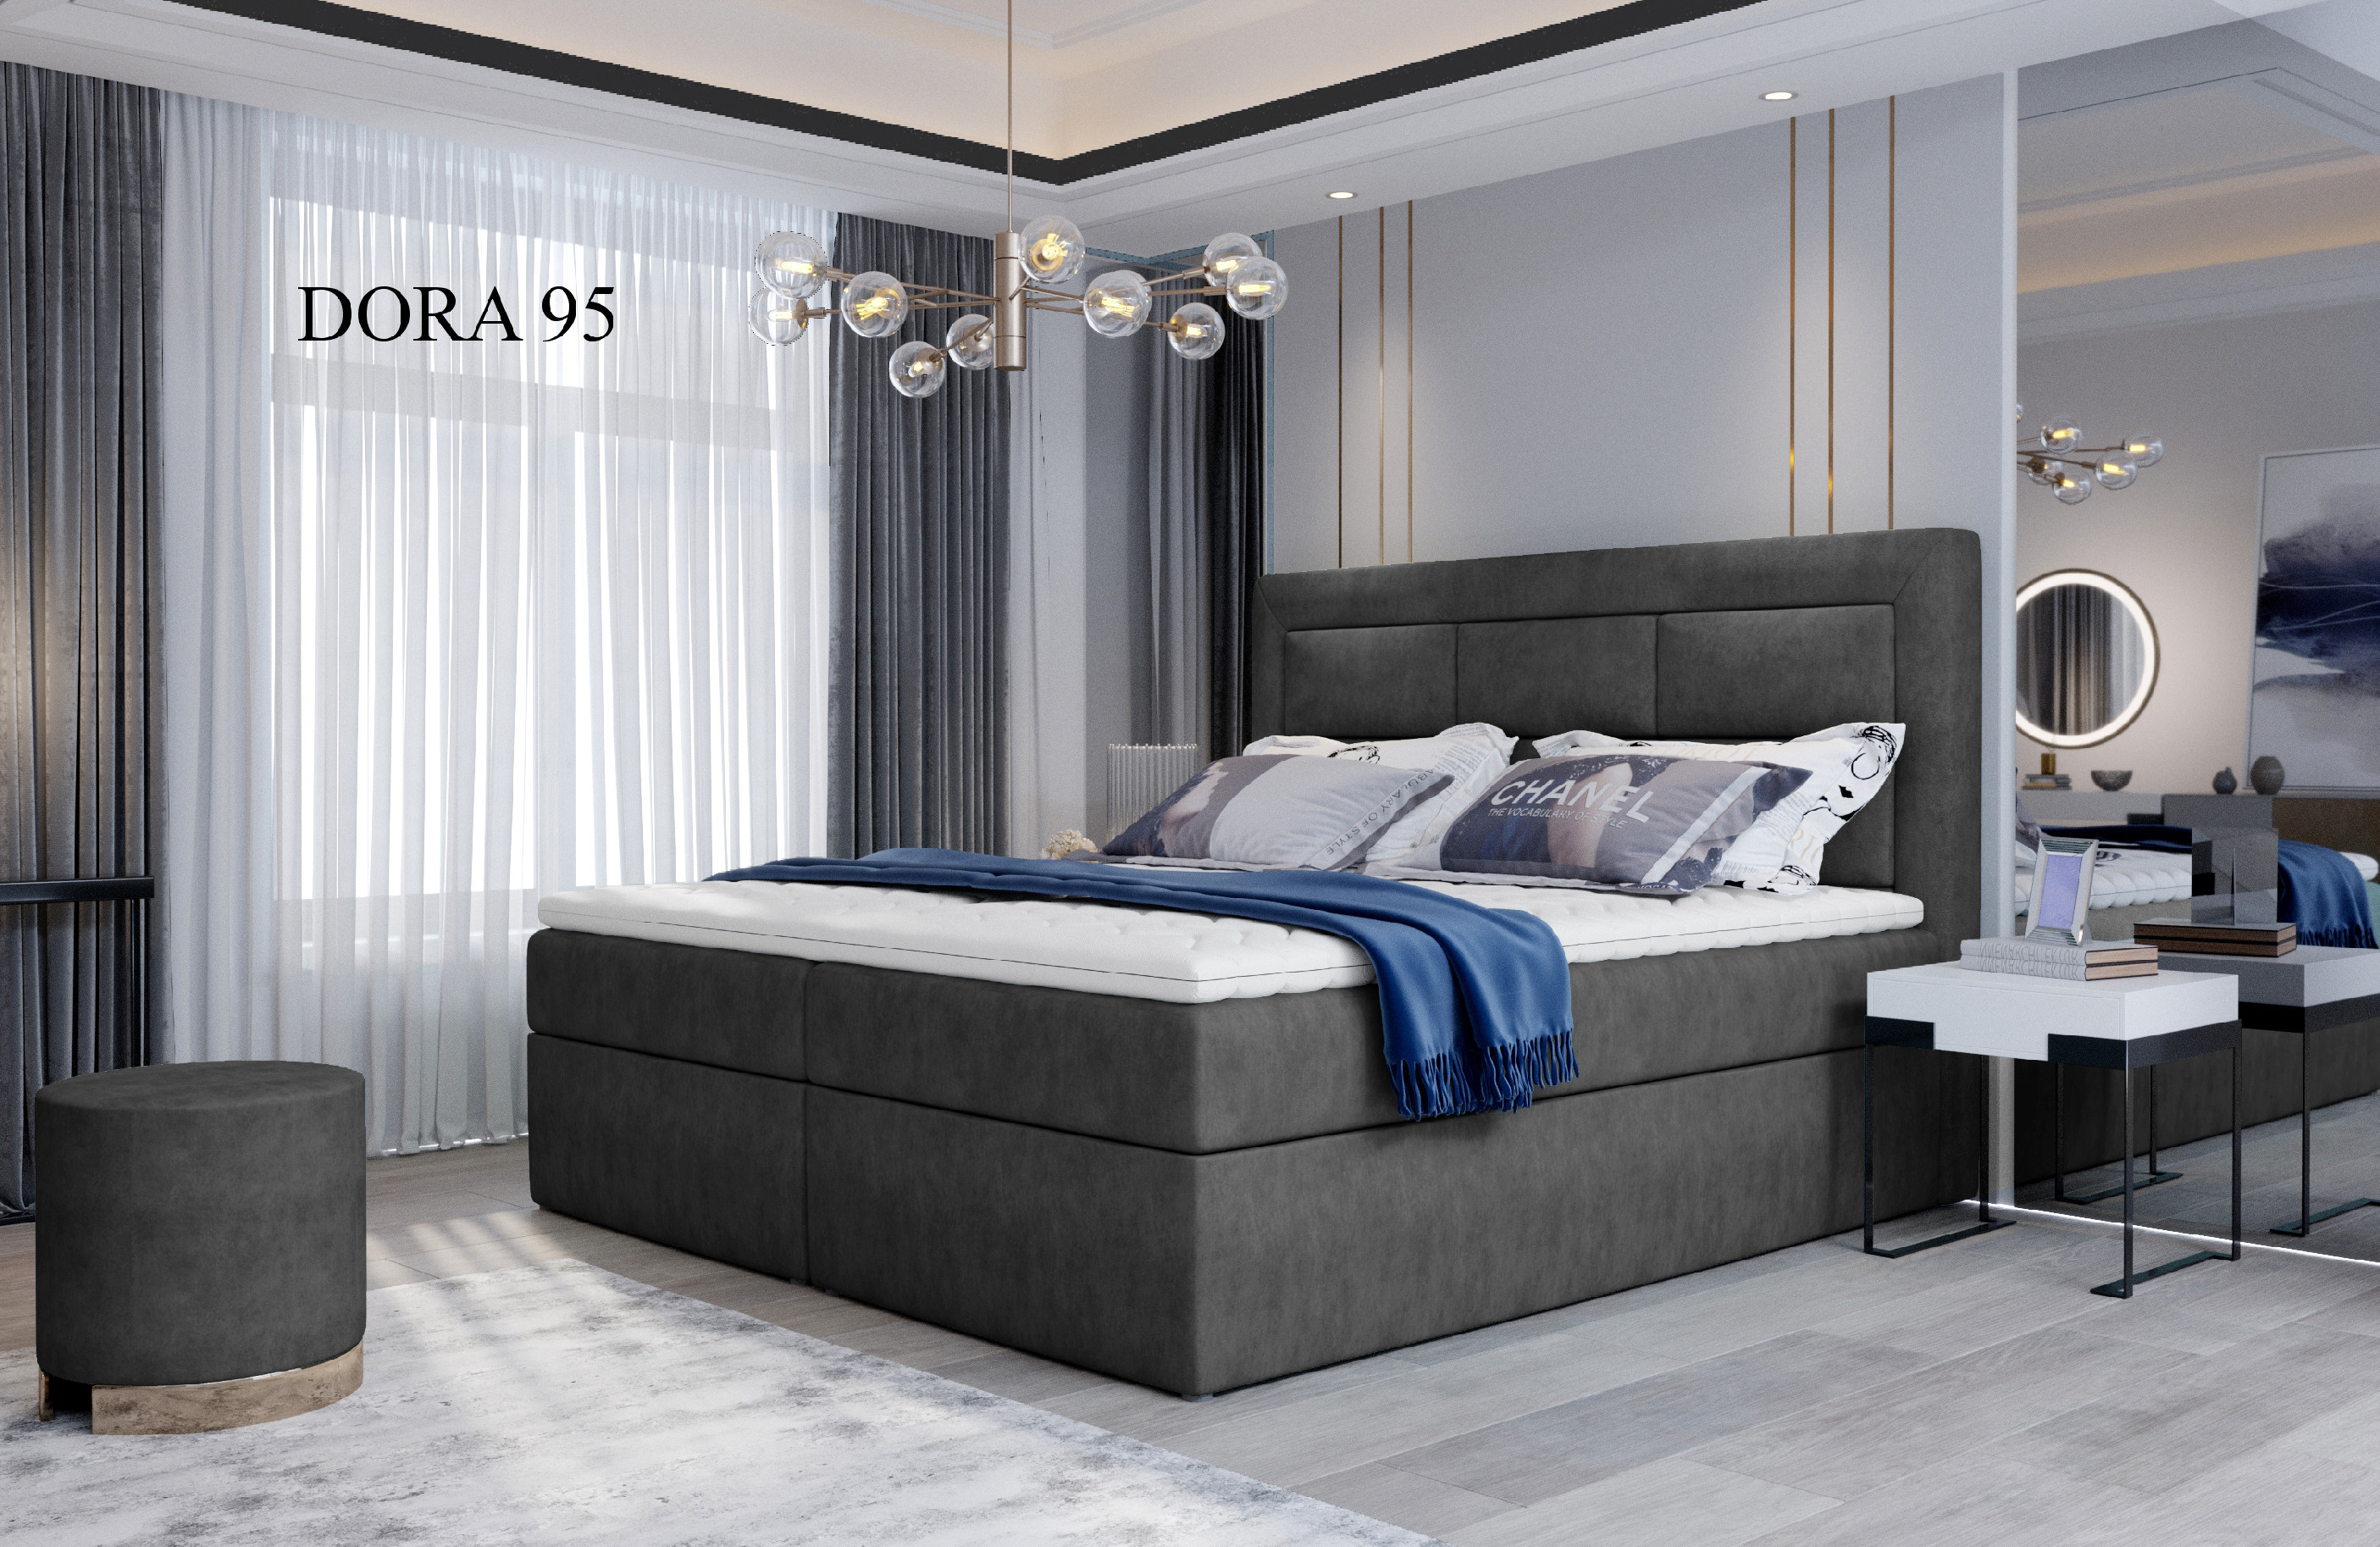 Čalouněná postel VIVRE Boxsprings 140 x 200 cm Provedení: Dora 95